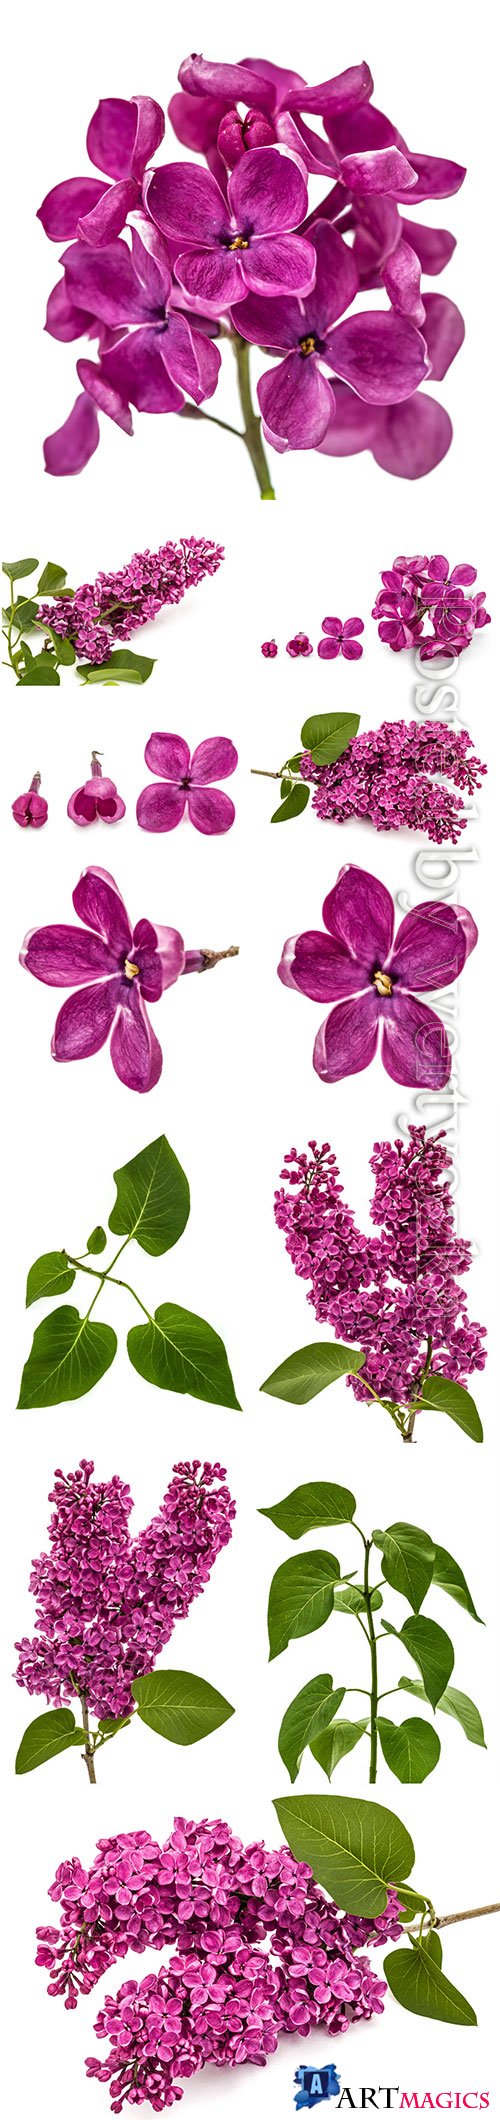 Lilac beautiful stock photo